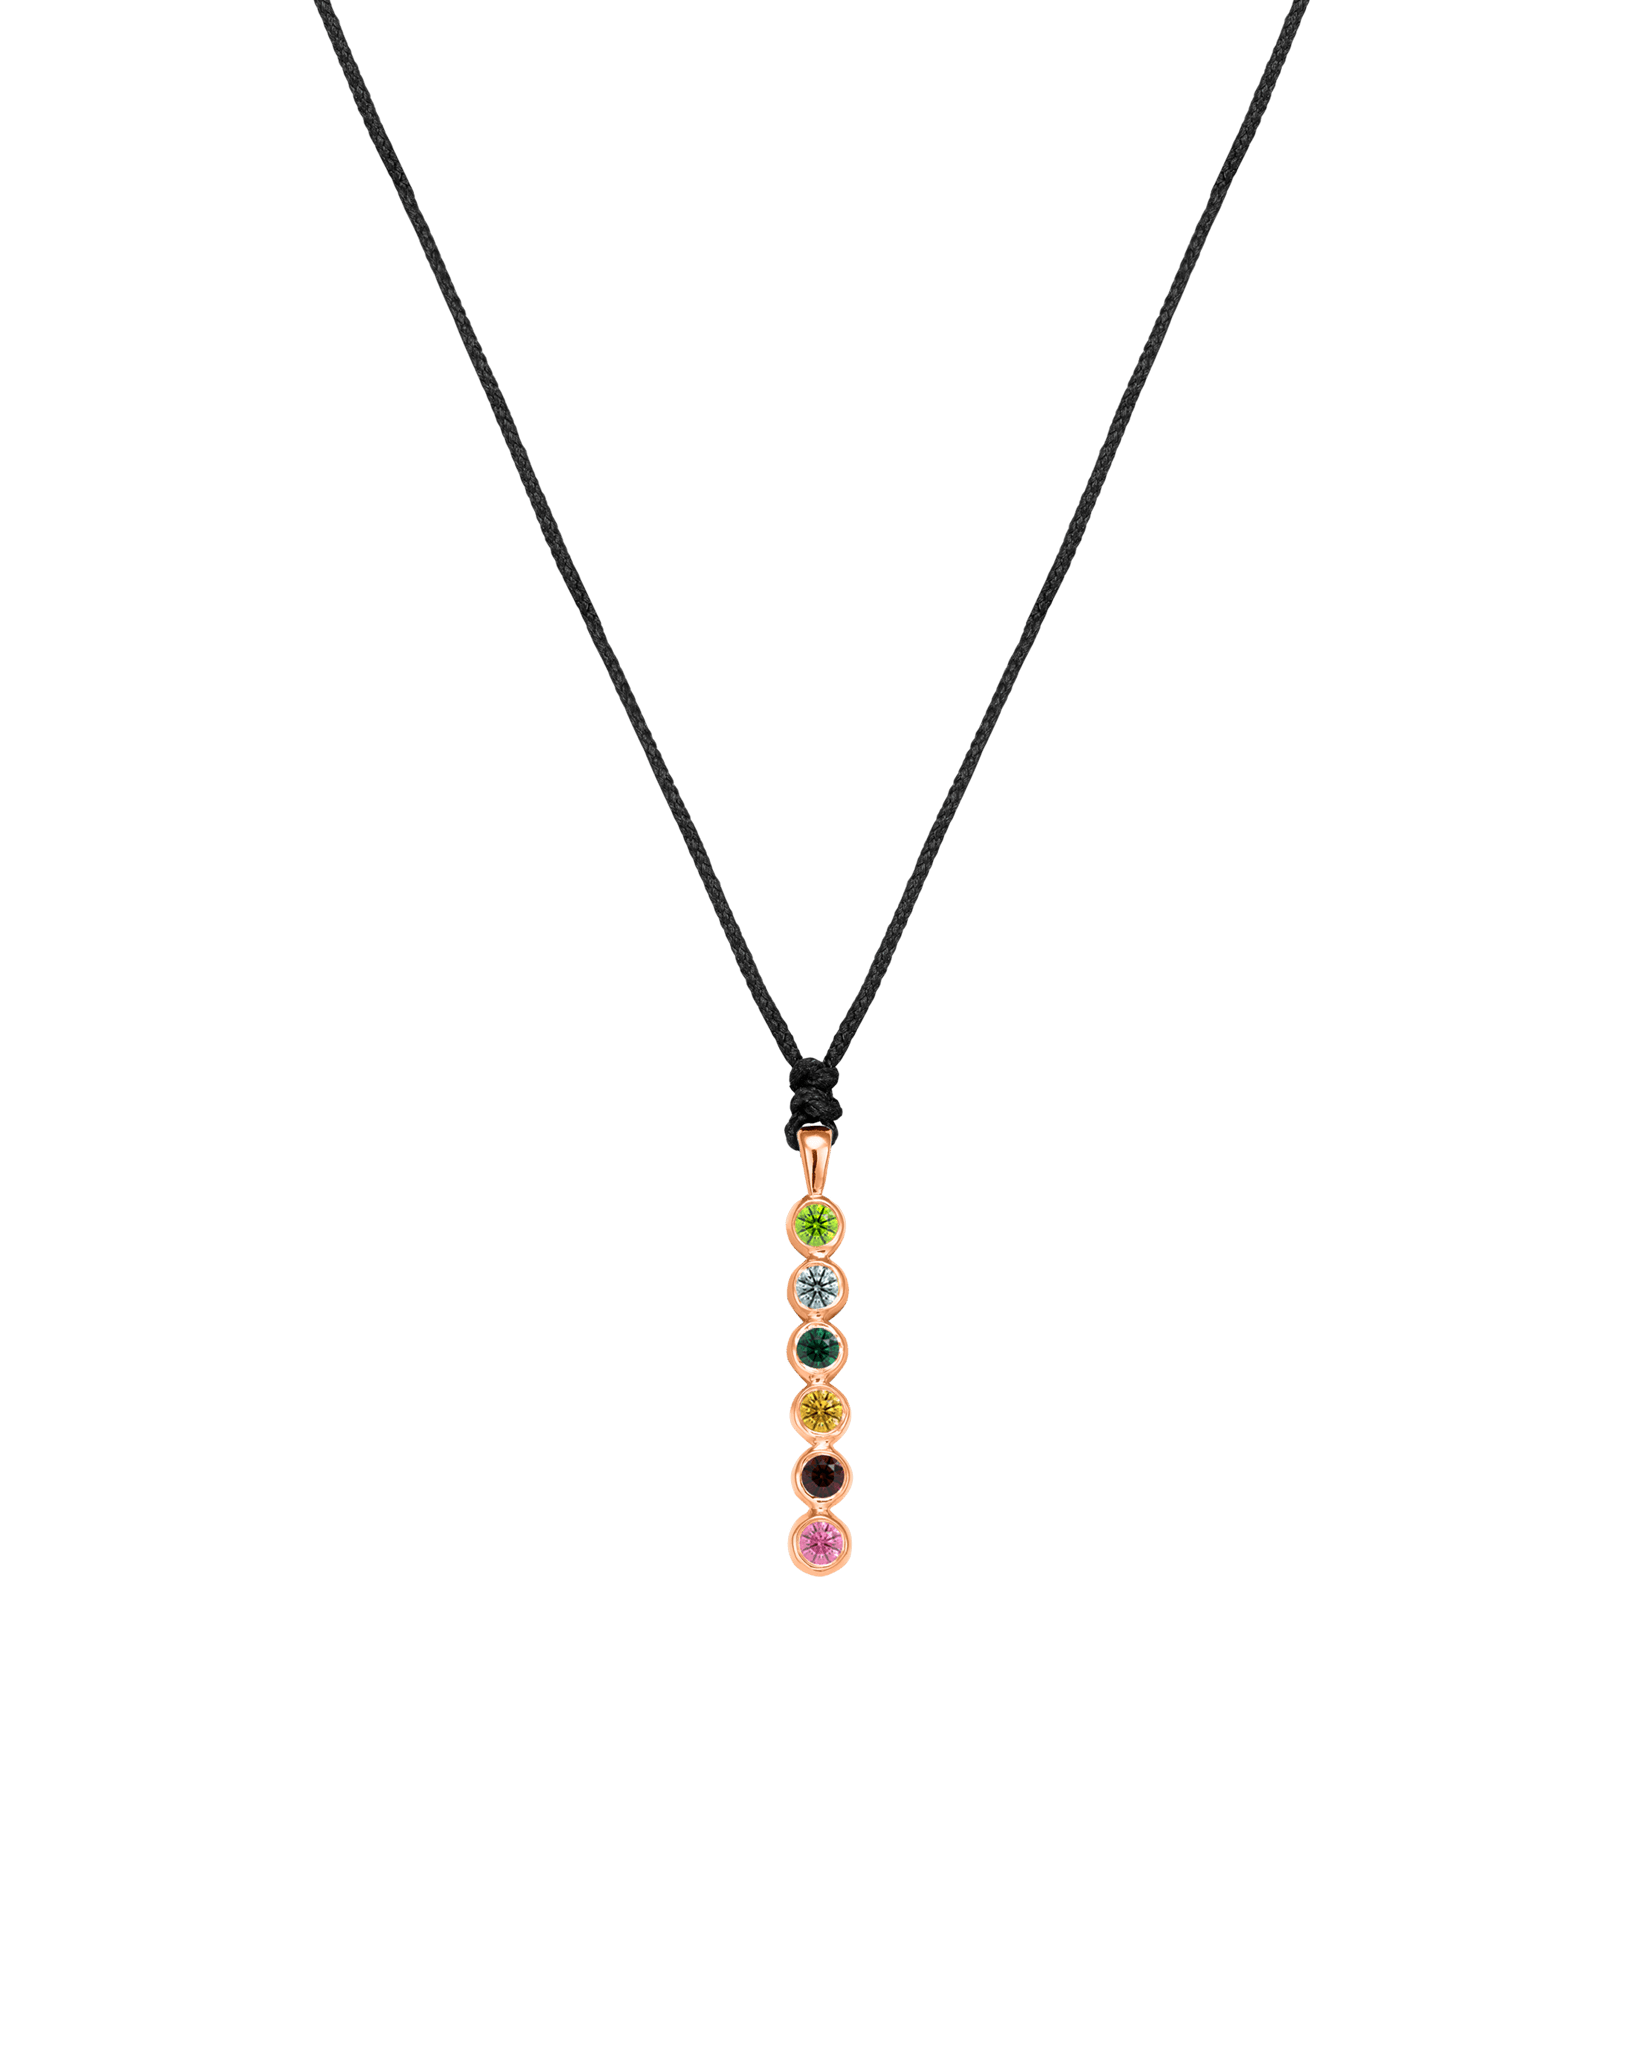 The Birthstones Bar Necklace - 14K Rose Gold Necklaces 14K Solid Gold Black 2 